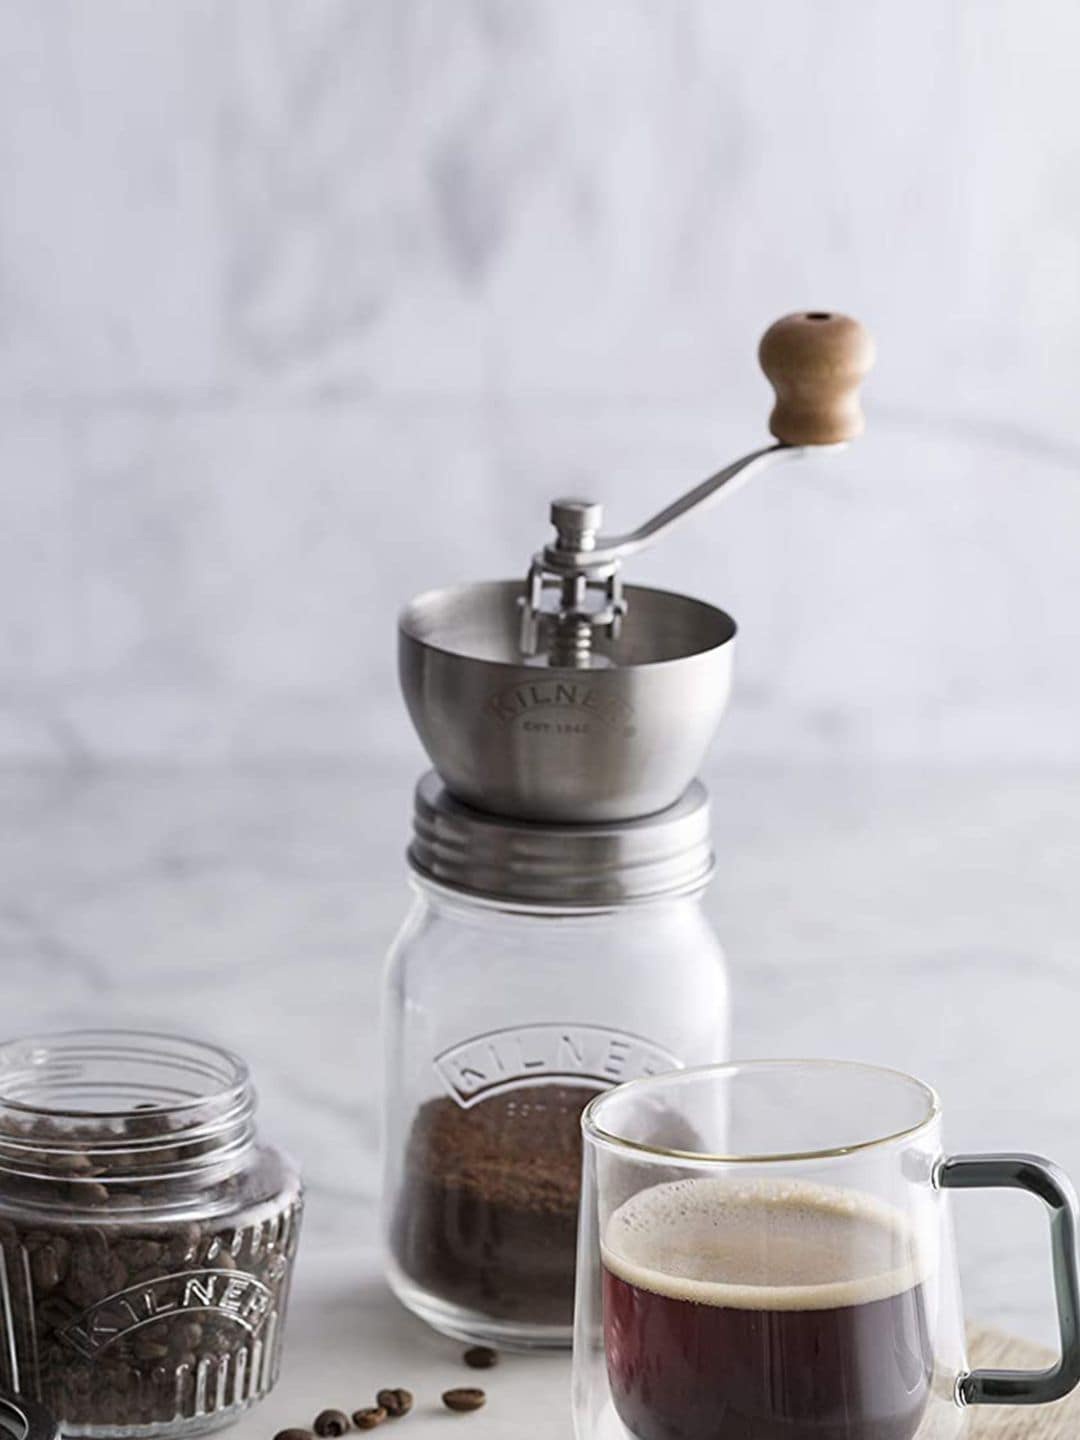 

KILNER Coffee Grinder Set, Transparent